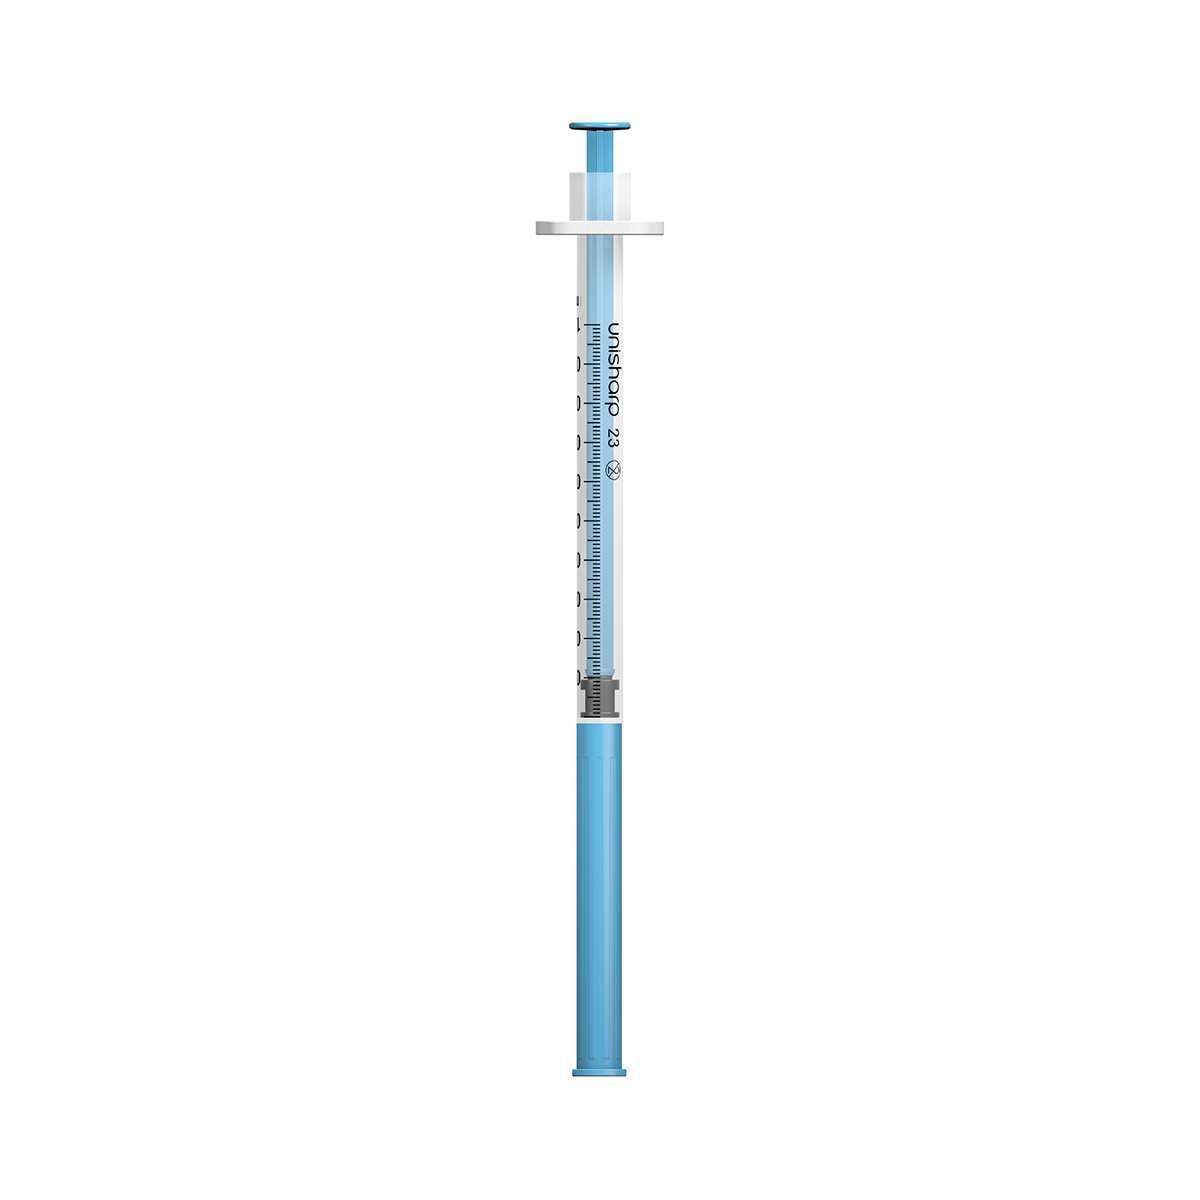 1ml 23G 32mm 1.25 inch Unisharp Syringe and Needle u100 - UKMEDI